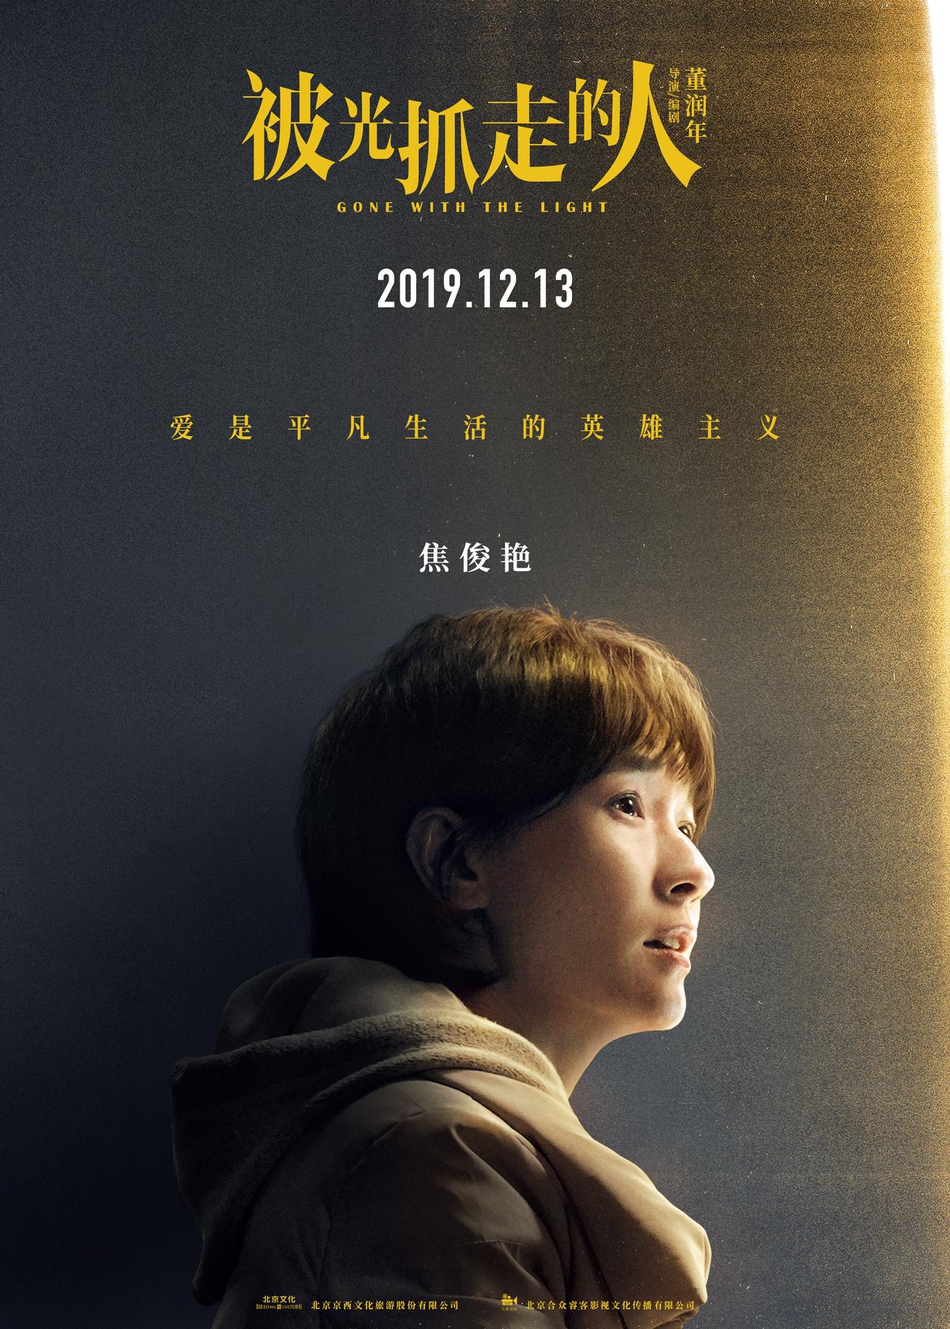 12月13日，黄渤、王珞丹主演电影《被光抓走的人》定档海报人物图片第2张